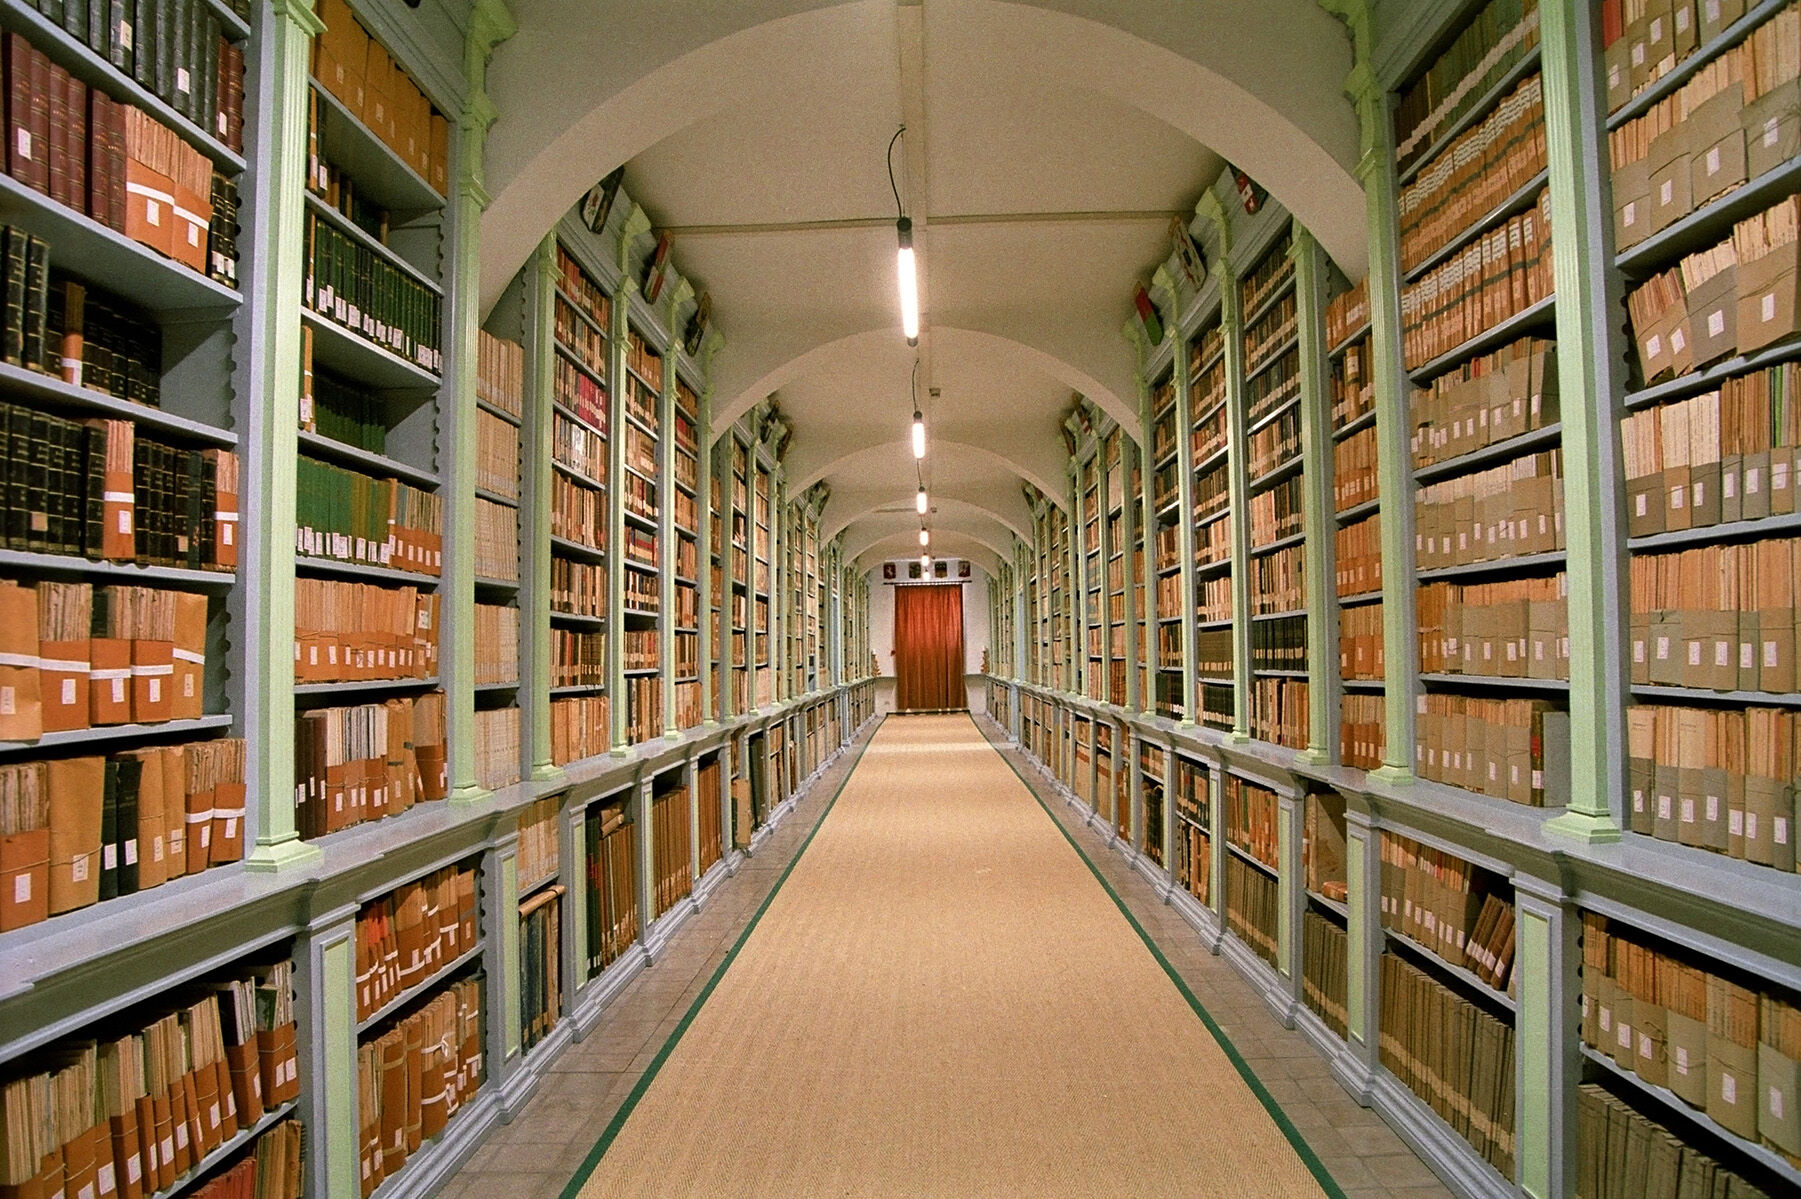 Biblioteca civica “G. Tartarotti”